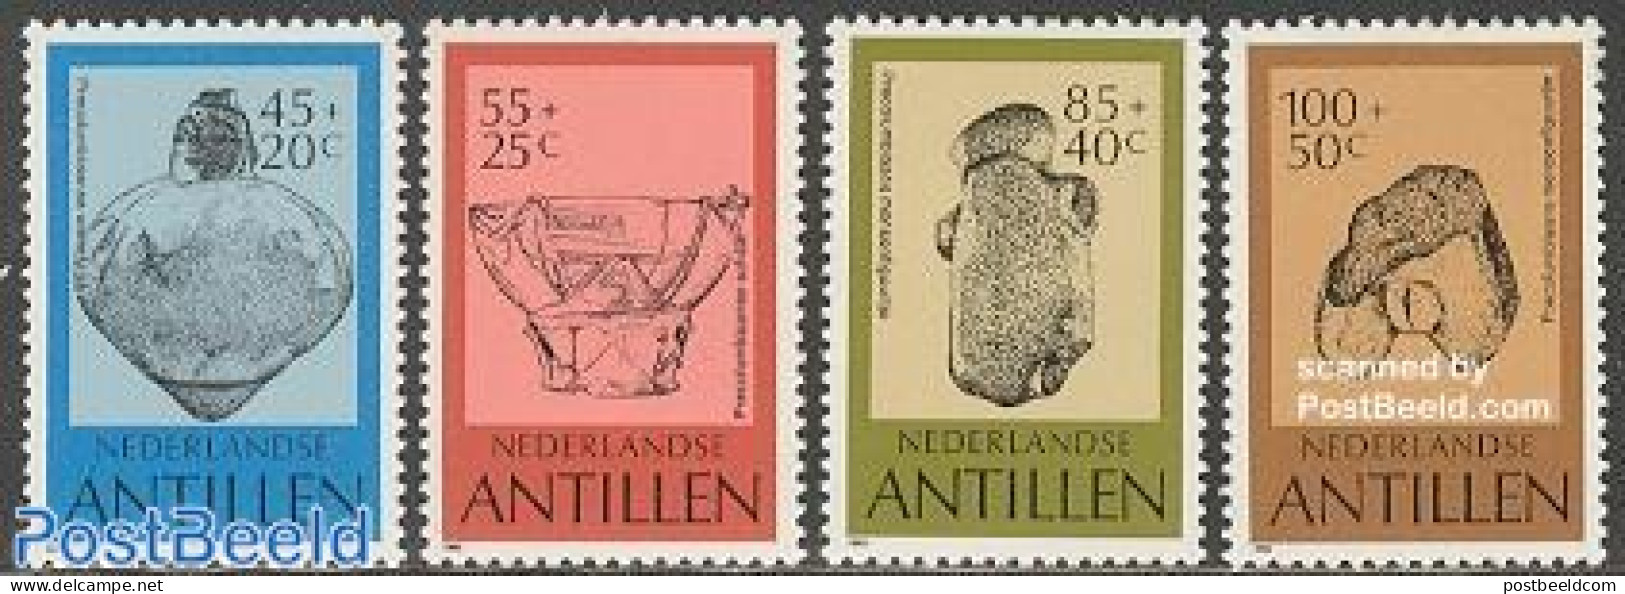 Netherlands Antilles 1983 Archaeology 4v, Mint NH, History - Archaeology - Art - Art & Antique Objects - Archaeology